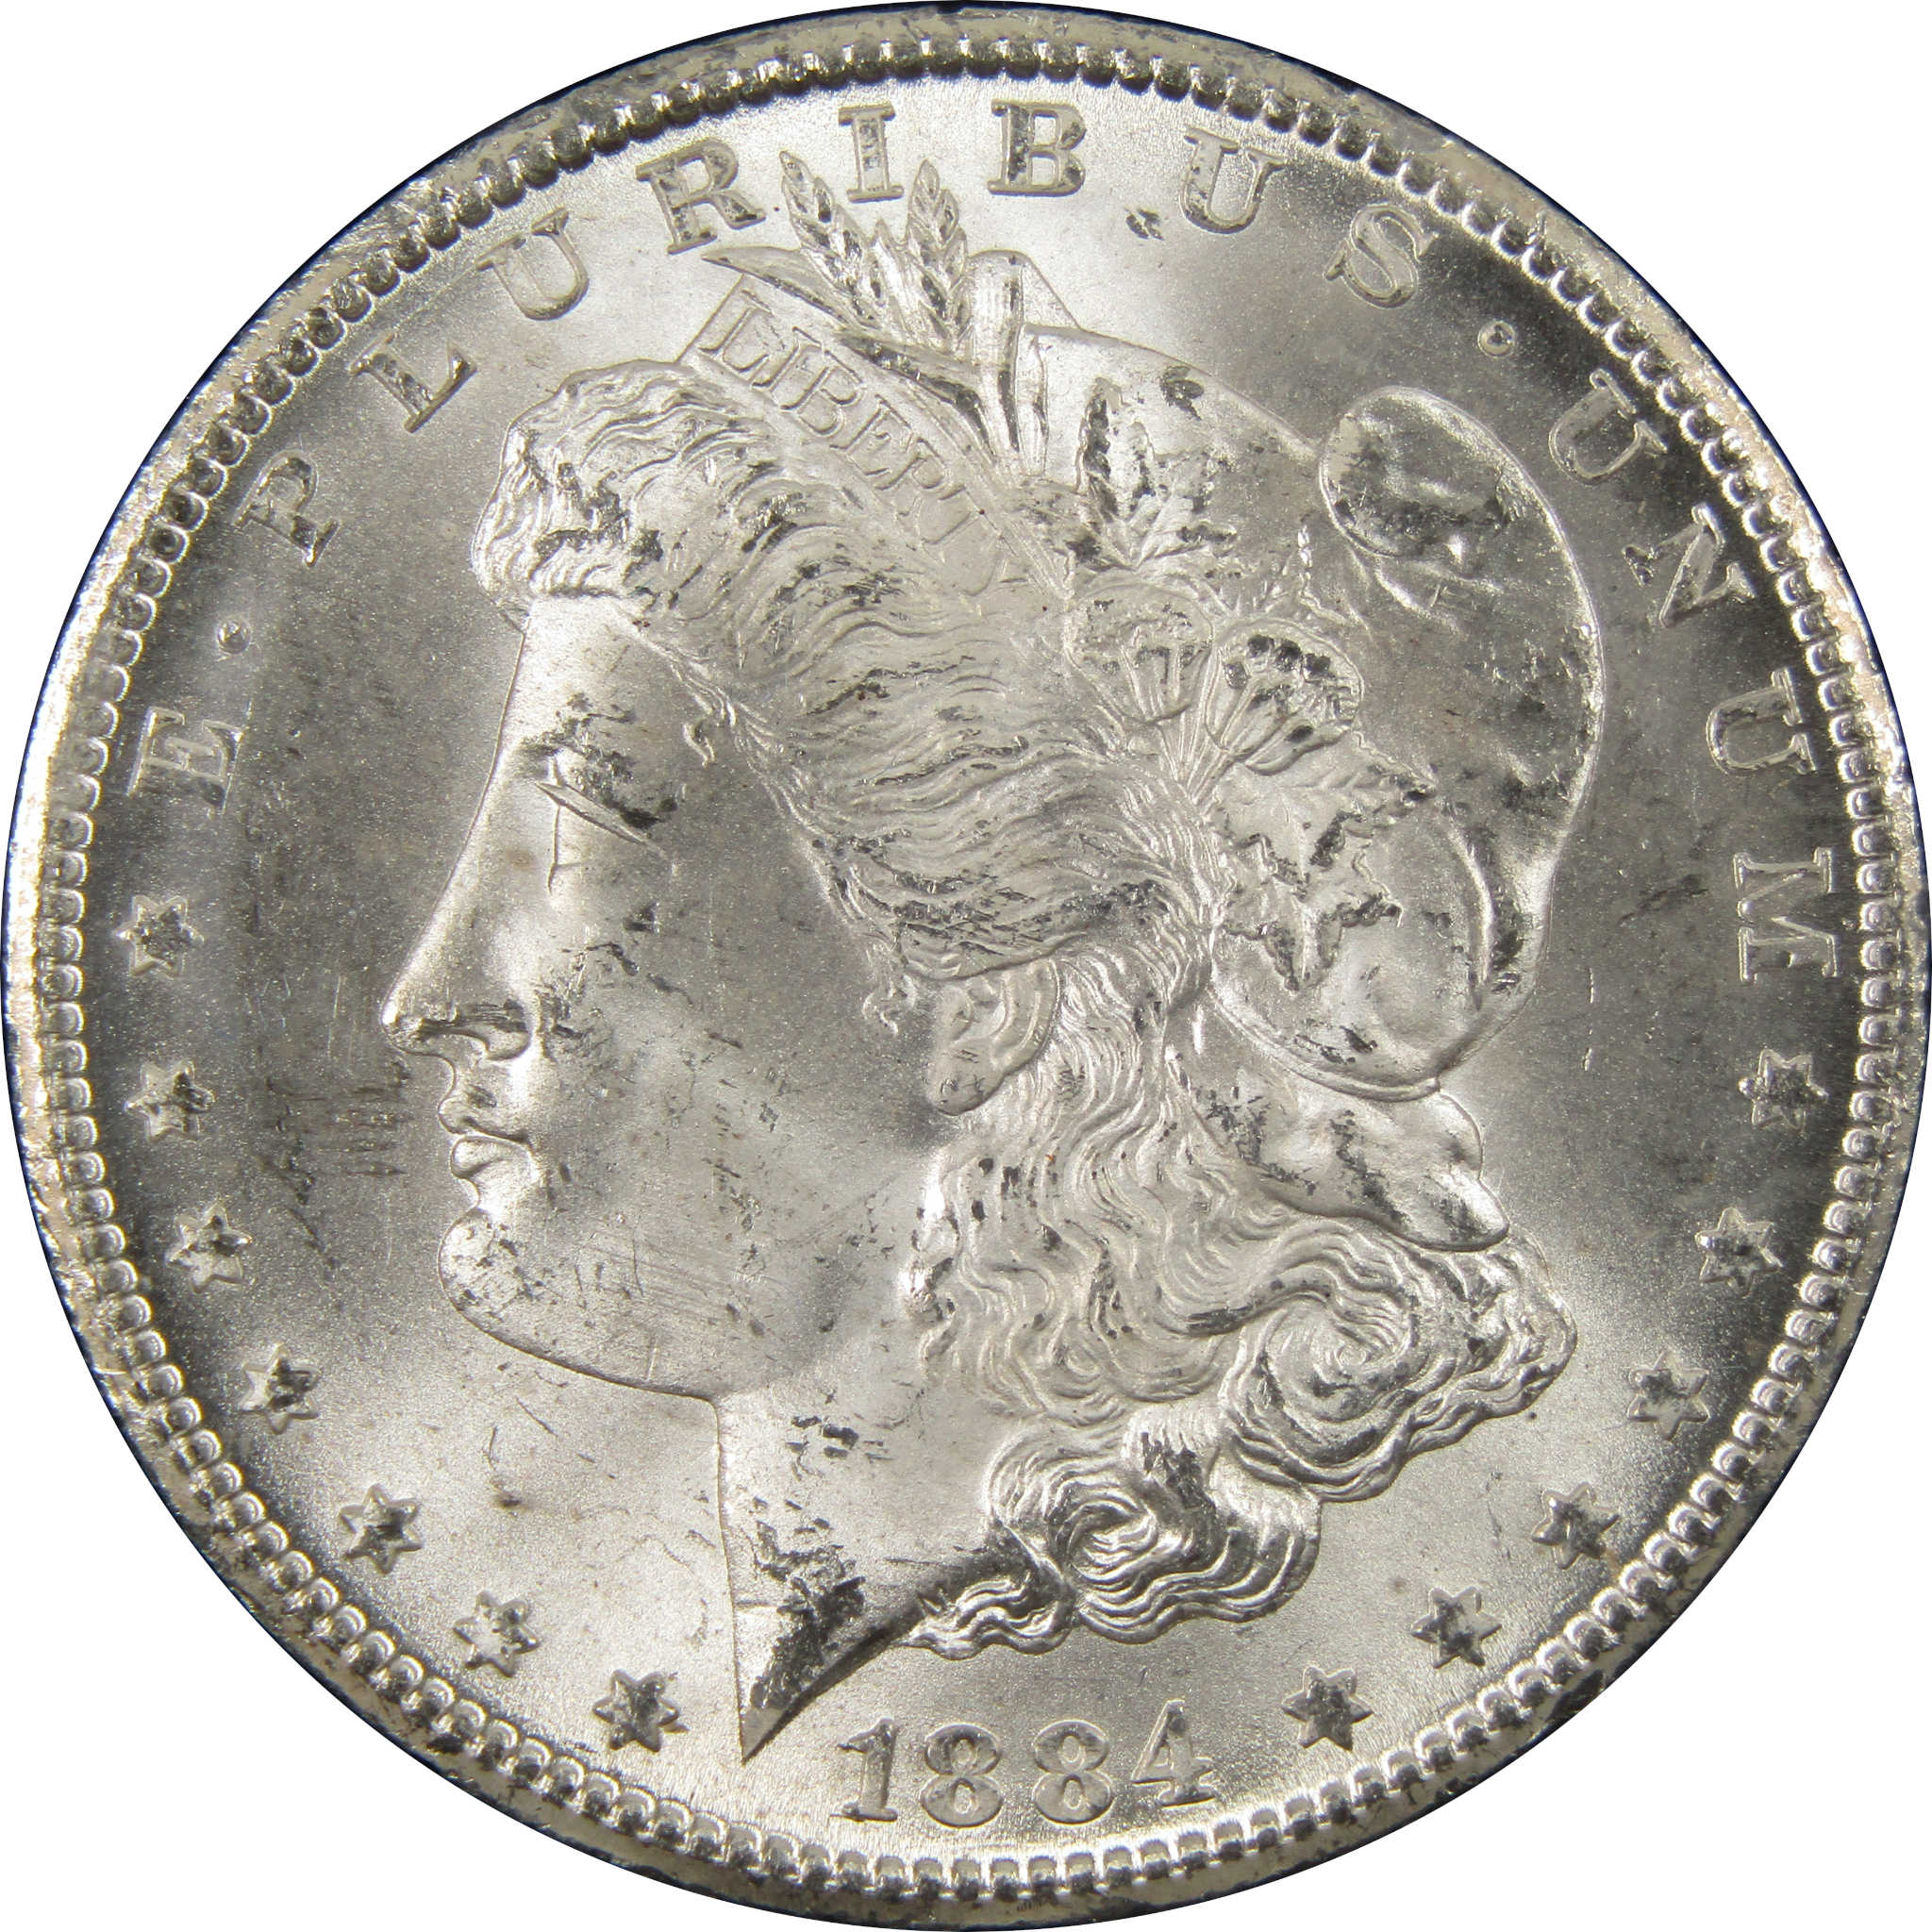 1884 CC GSA Morgan Dollar BU Uncirculated Silver $1 Coin SKU:I9860 - Morgan coin - Morgan silver dollar - Morgan silver dollar for sale - Profile Coins &amp; Collectibles